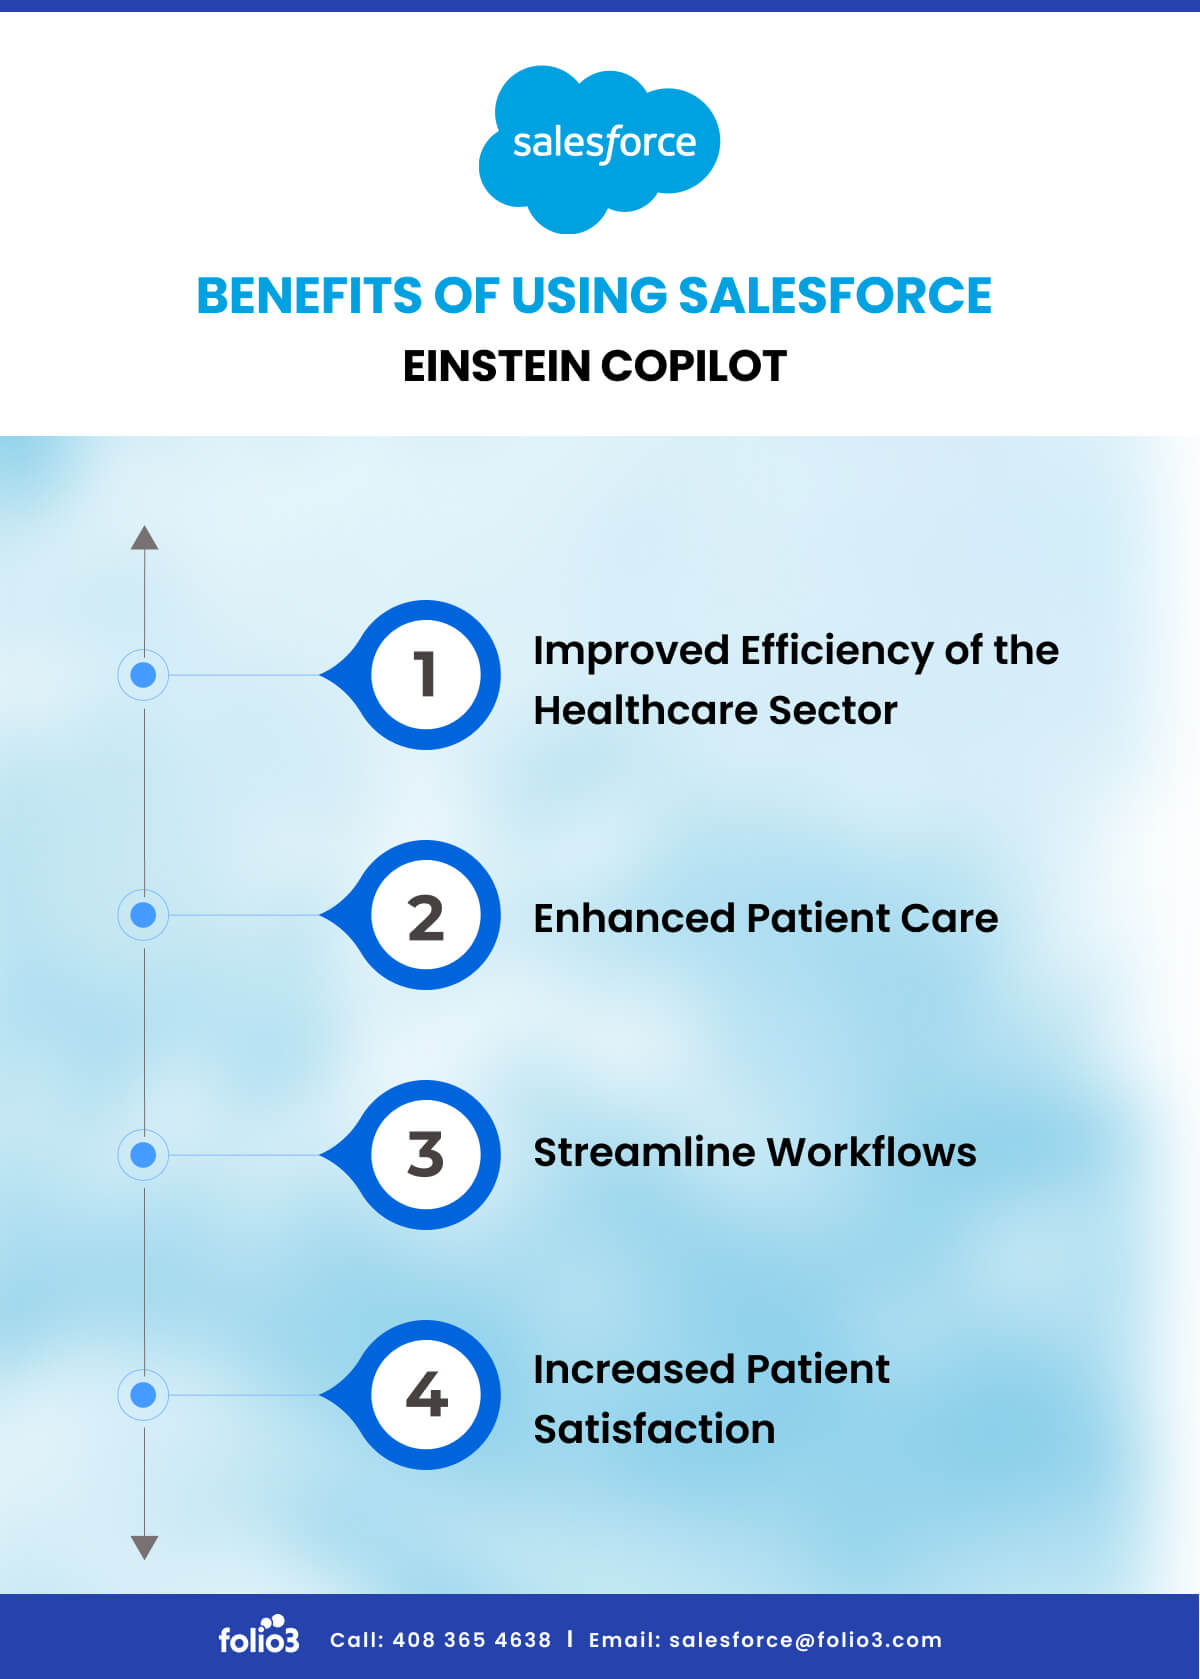 Benefits of Using Salesforce Einstein Copilot